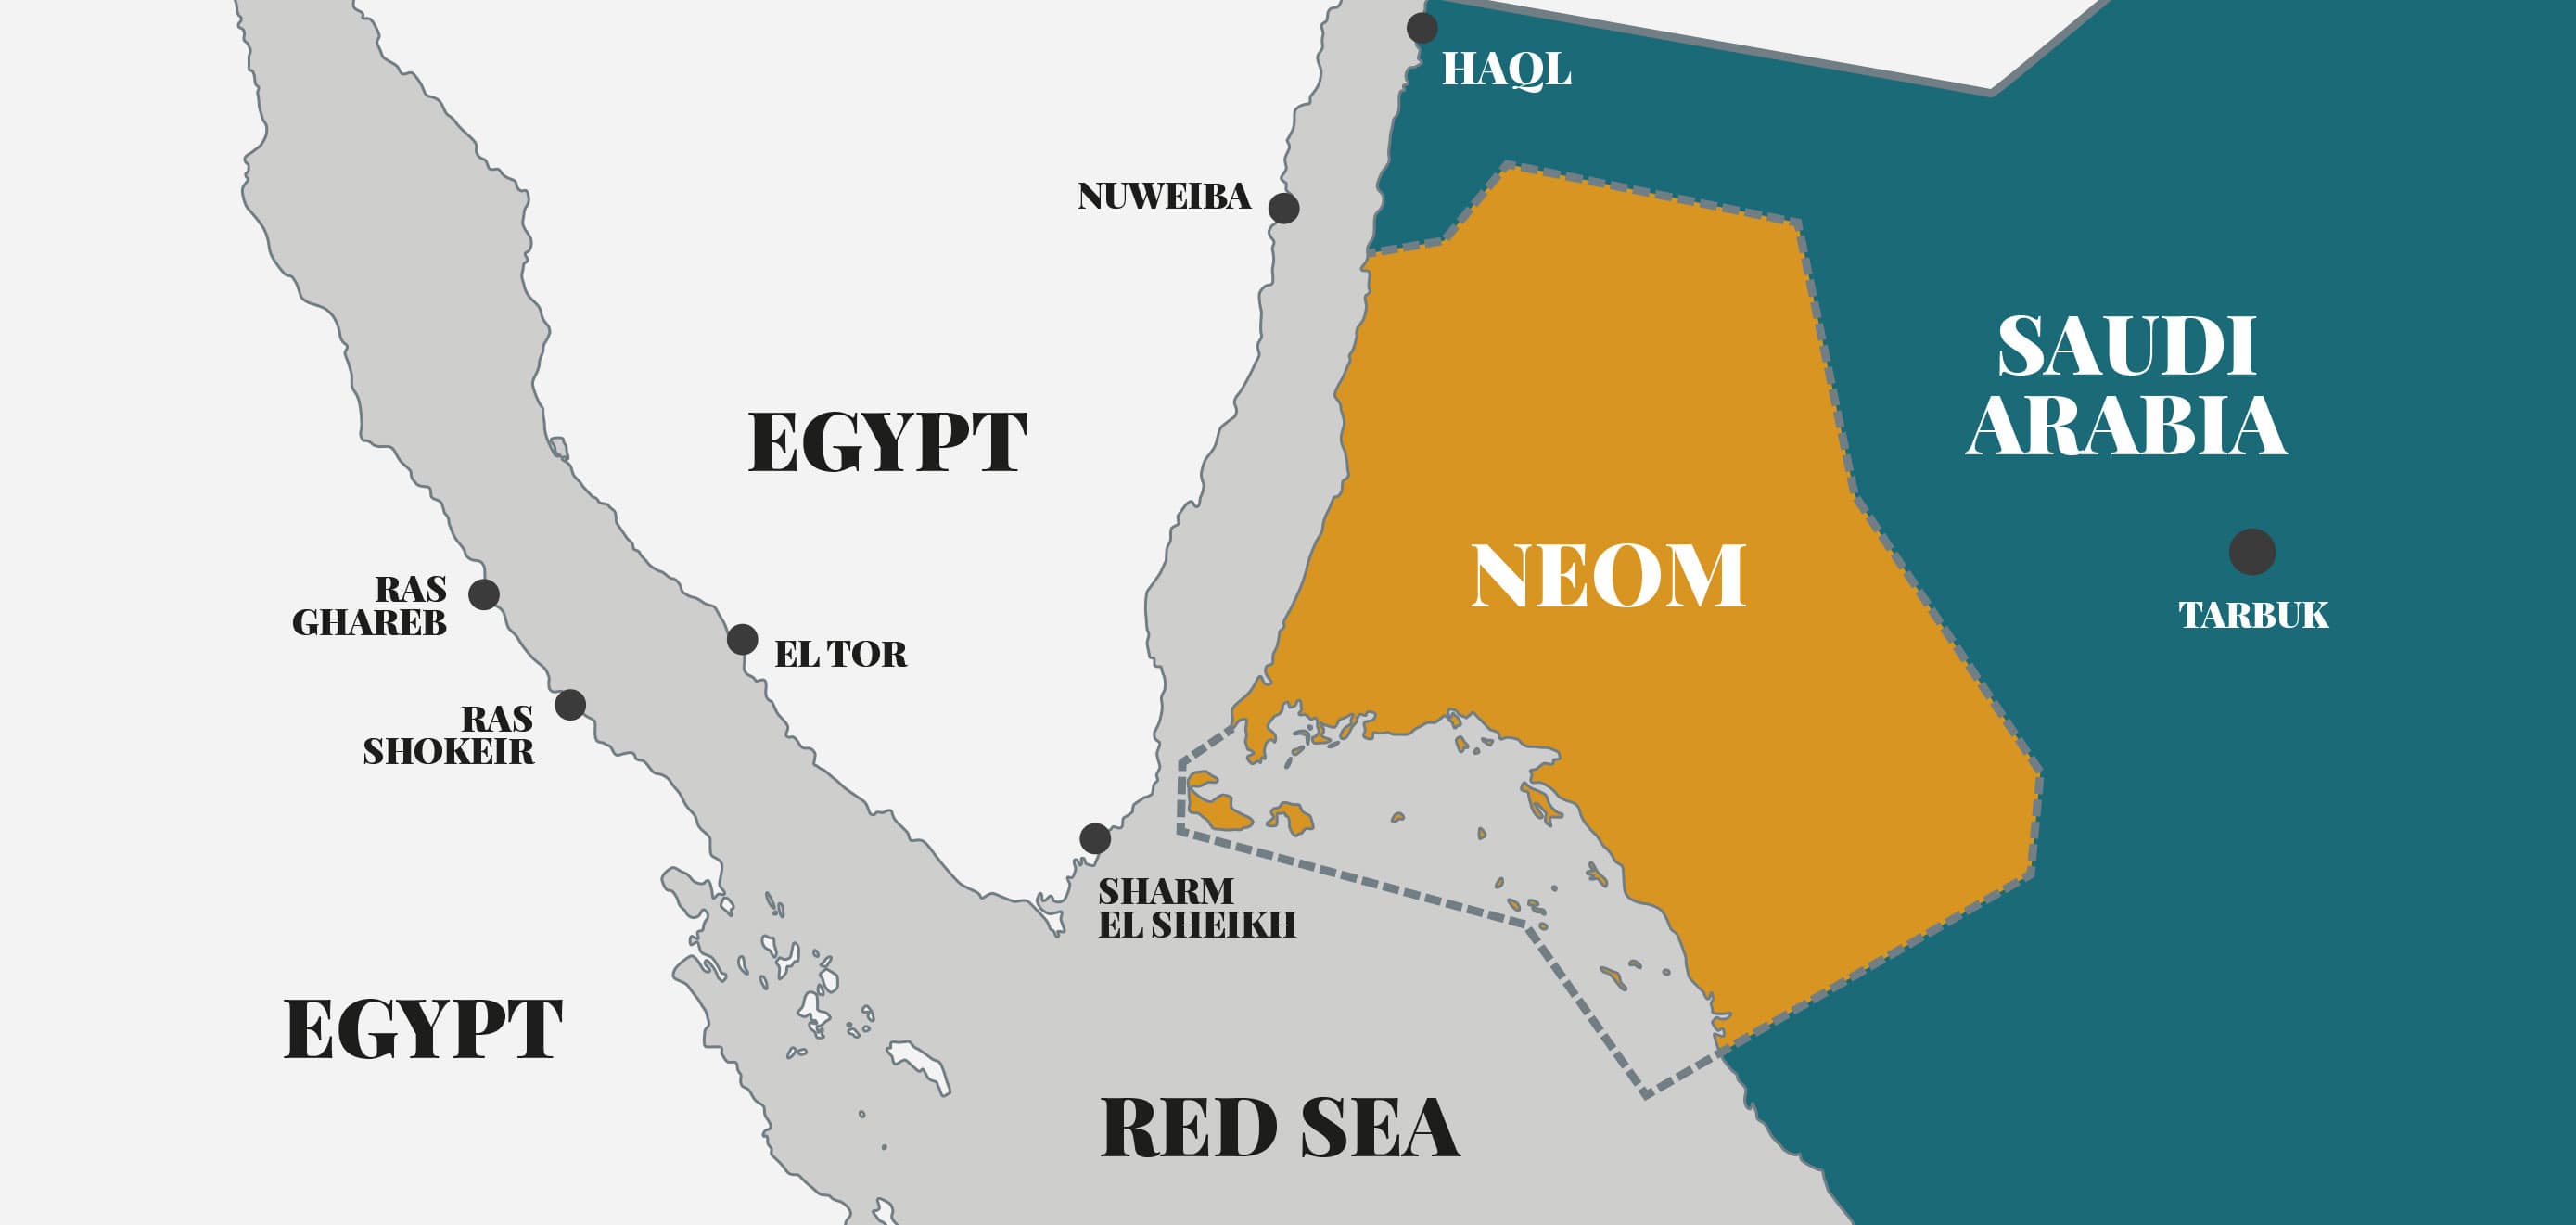 KAUST-CNR-NEOM MAP1